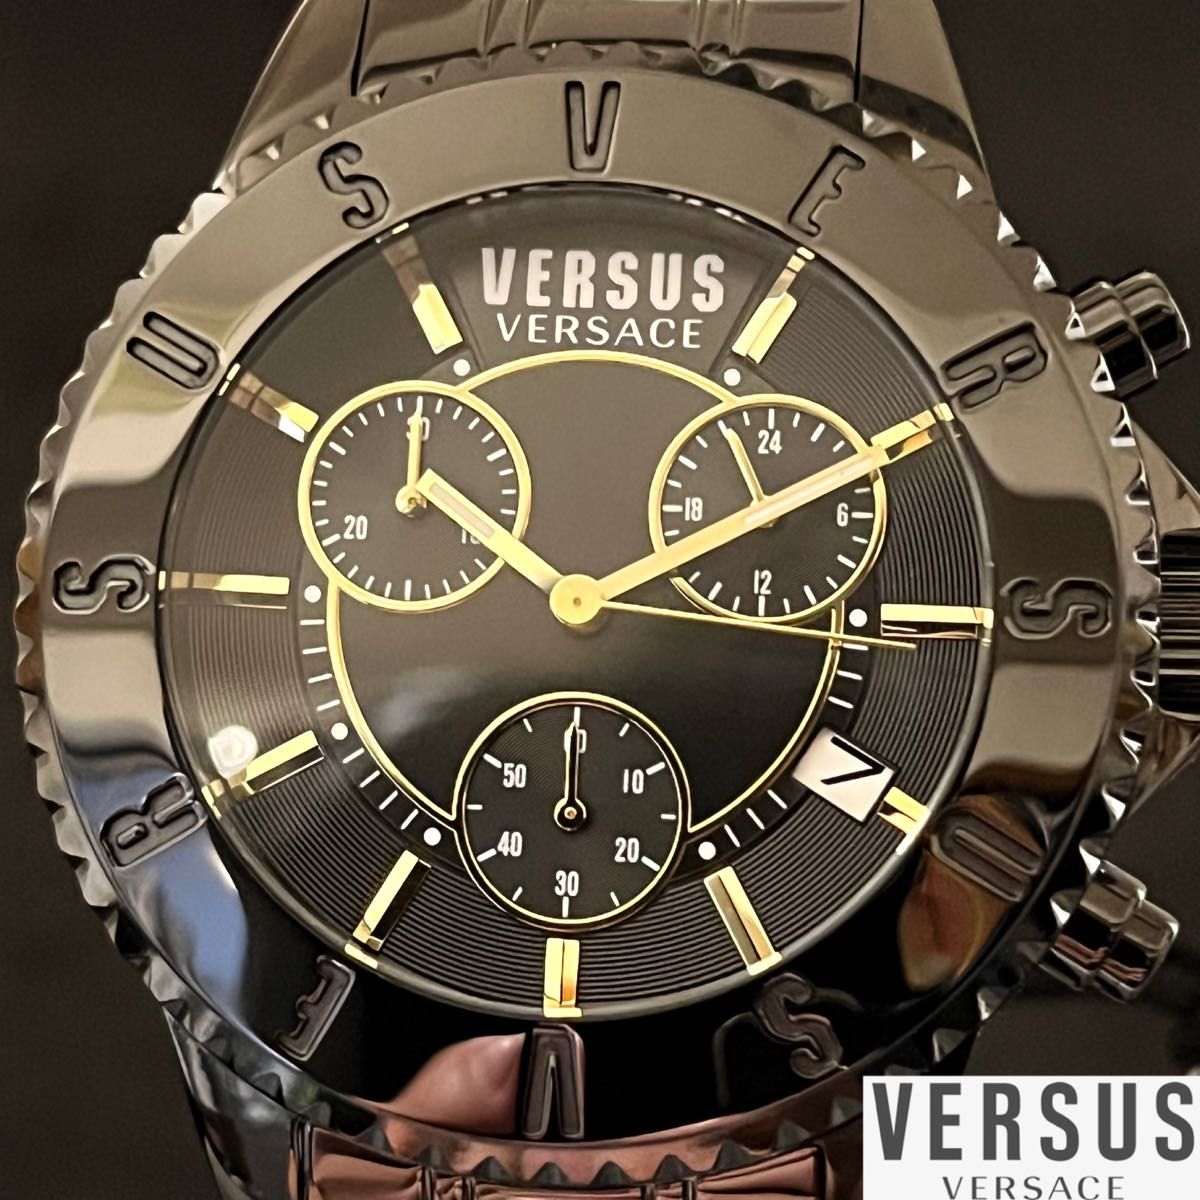 【ブラック色】Versus Versace/ベルサス ベルサーチ/メンズ腕時計/プレゼントに/ヴェルサス ヴェルサーチ/男性用/黒